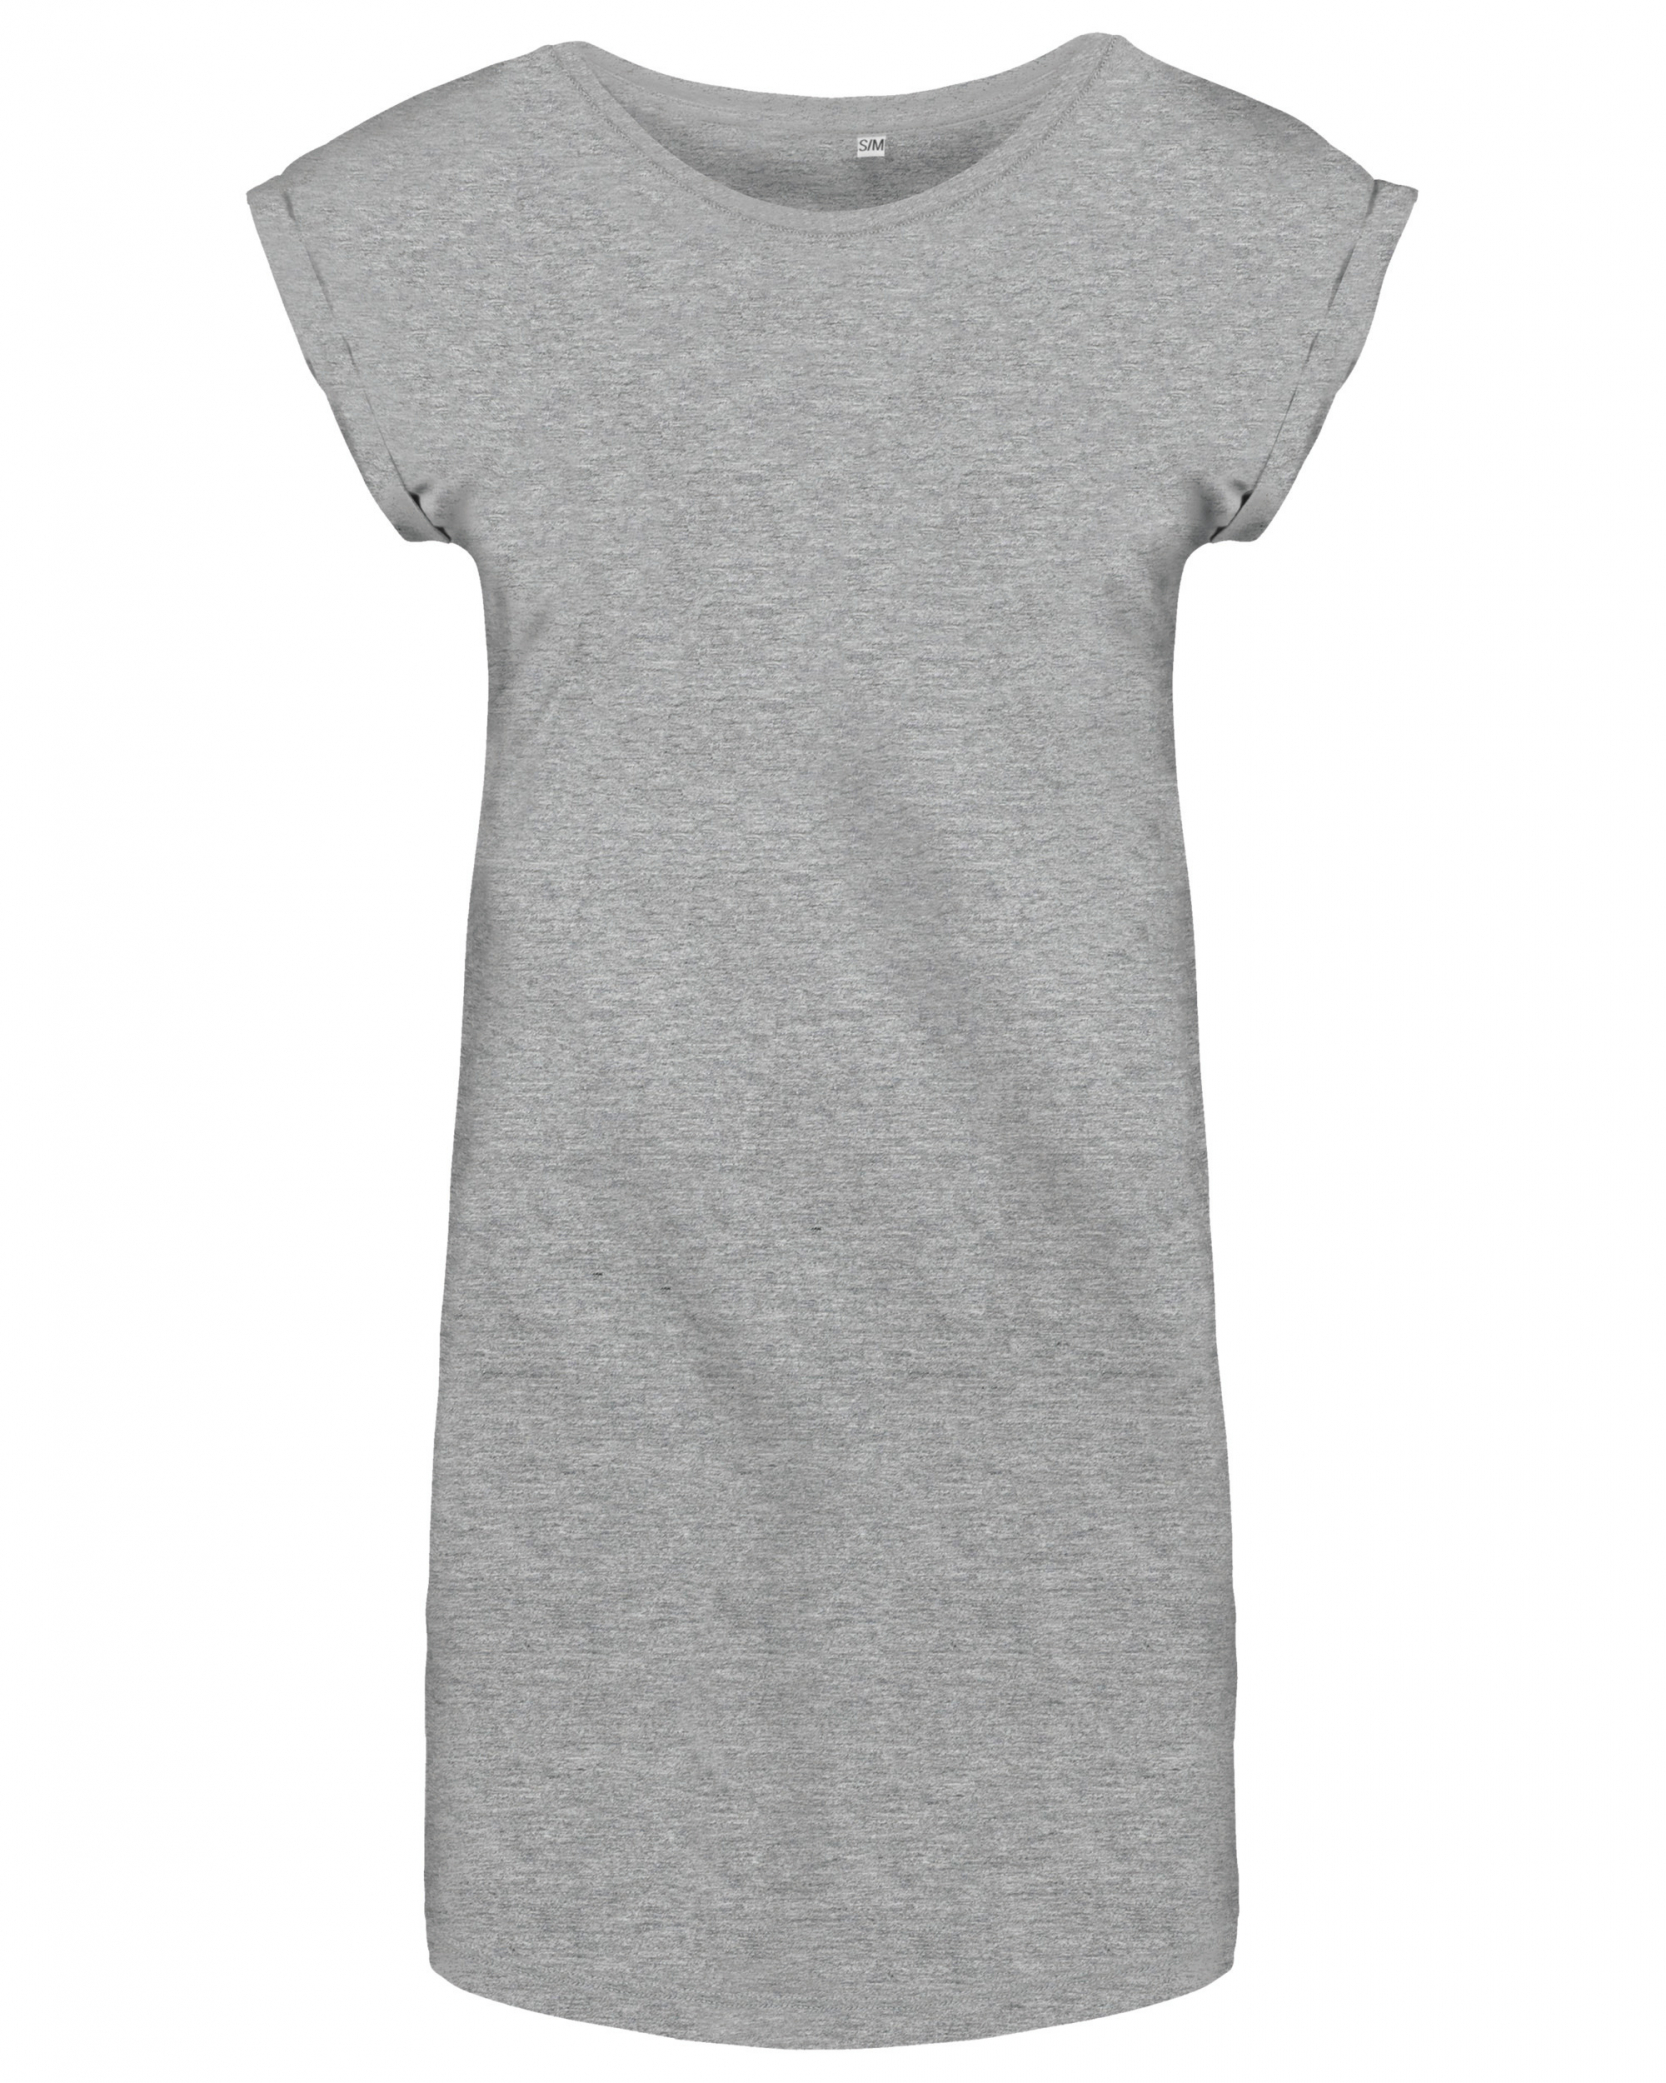 Dámské dlouhé tričko - šaty Barva: světle šedý melír, Velikost: S/M